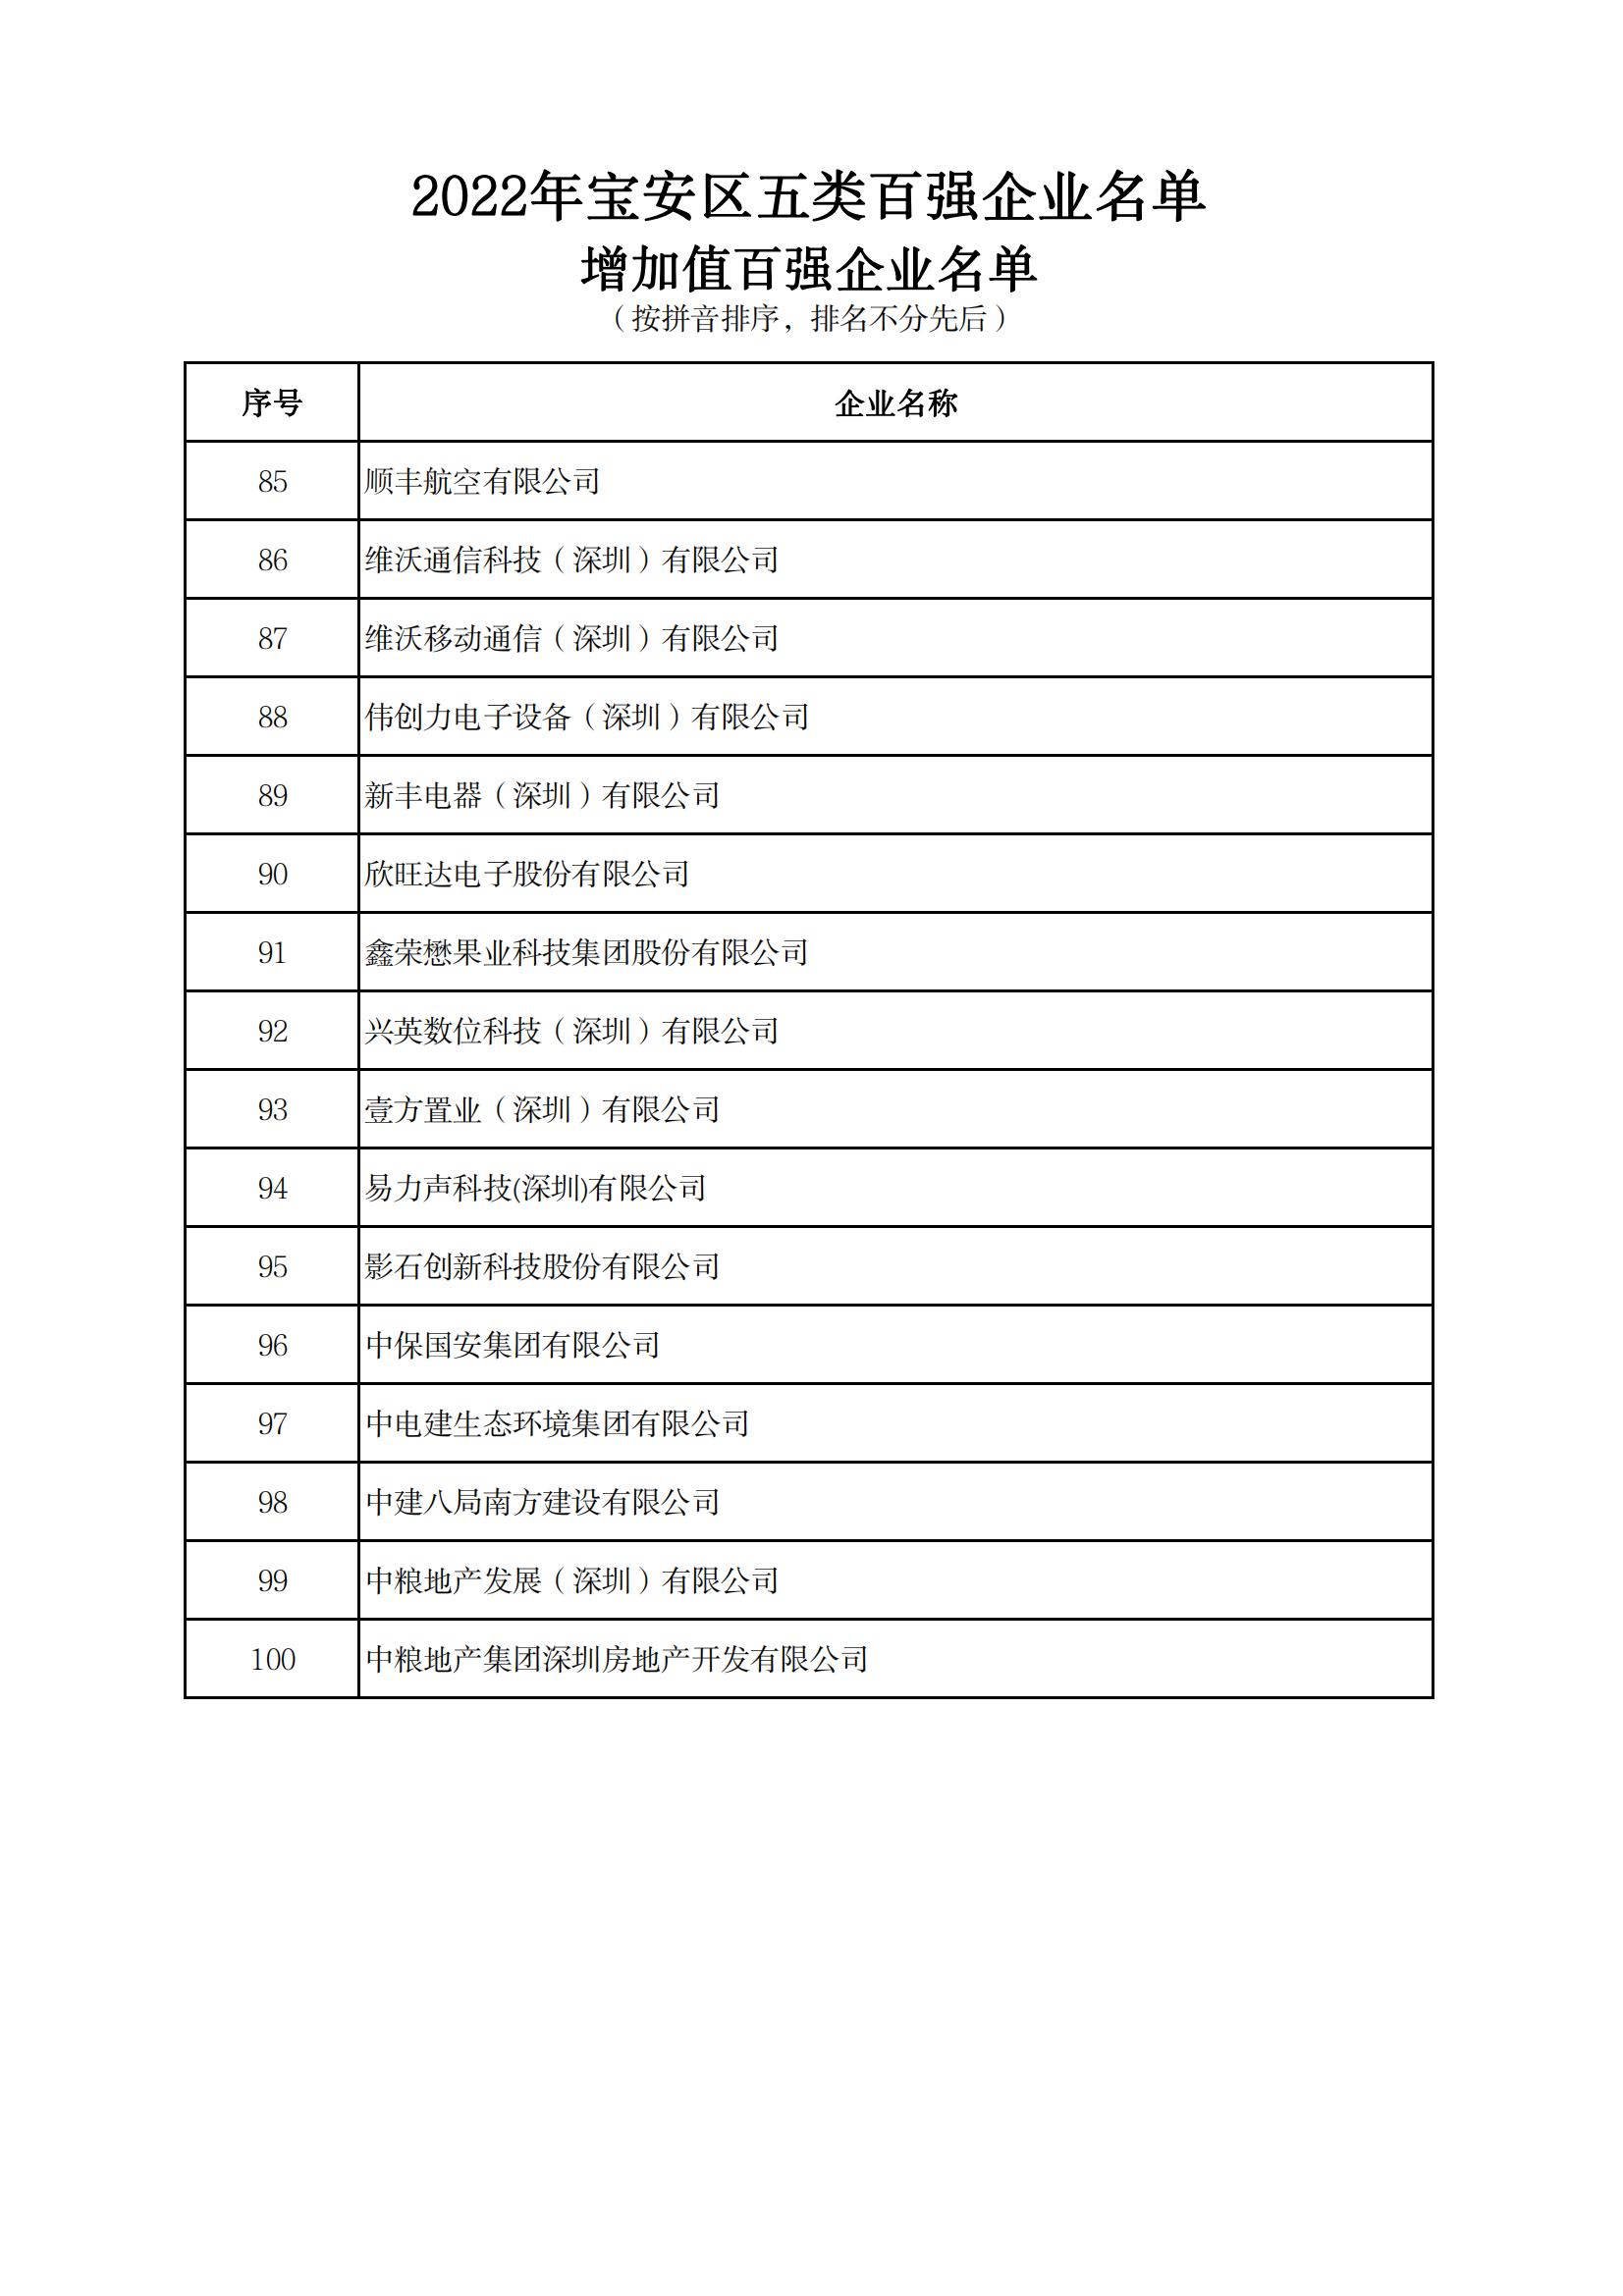 附件：2022年宝安区五类百强企业名单_09.jpg